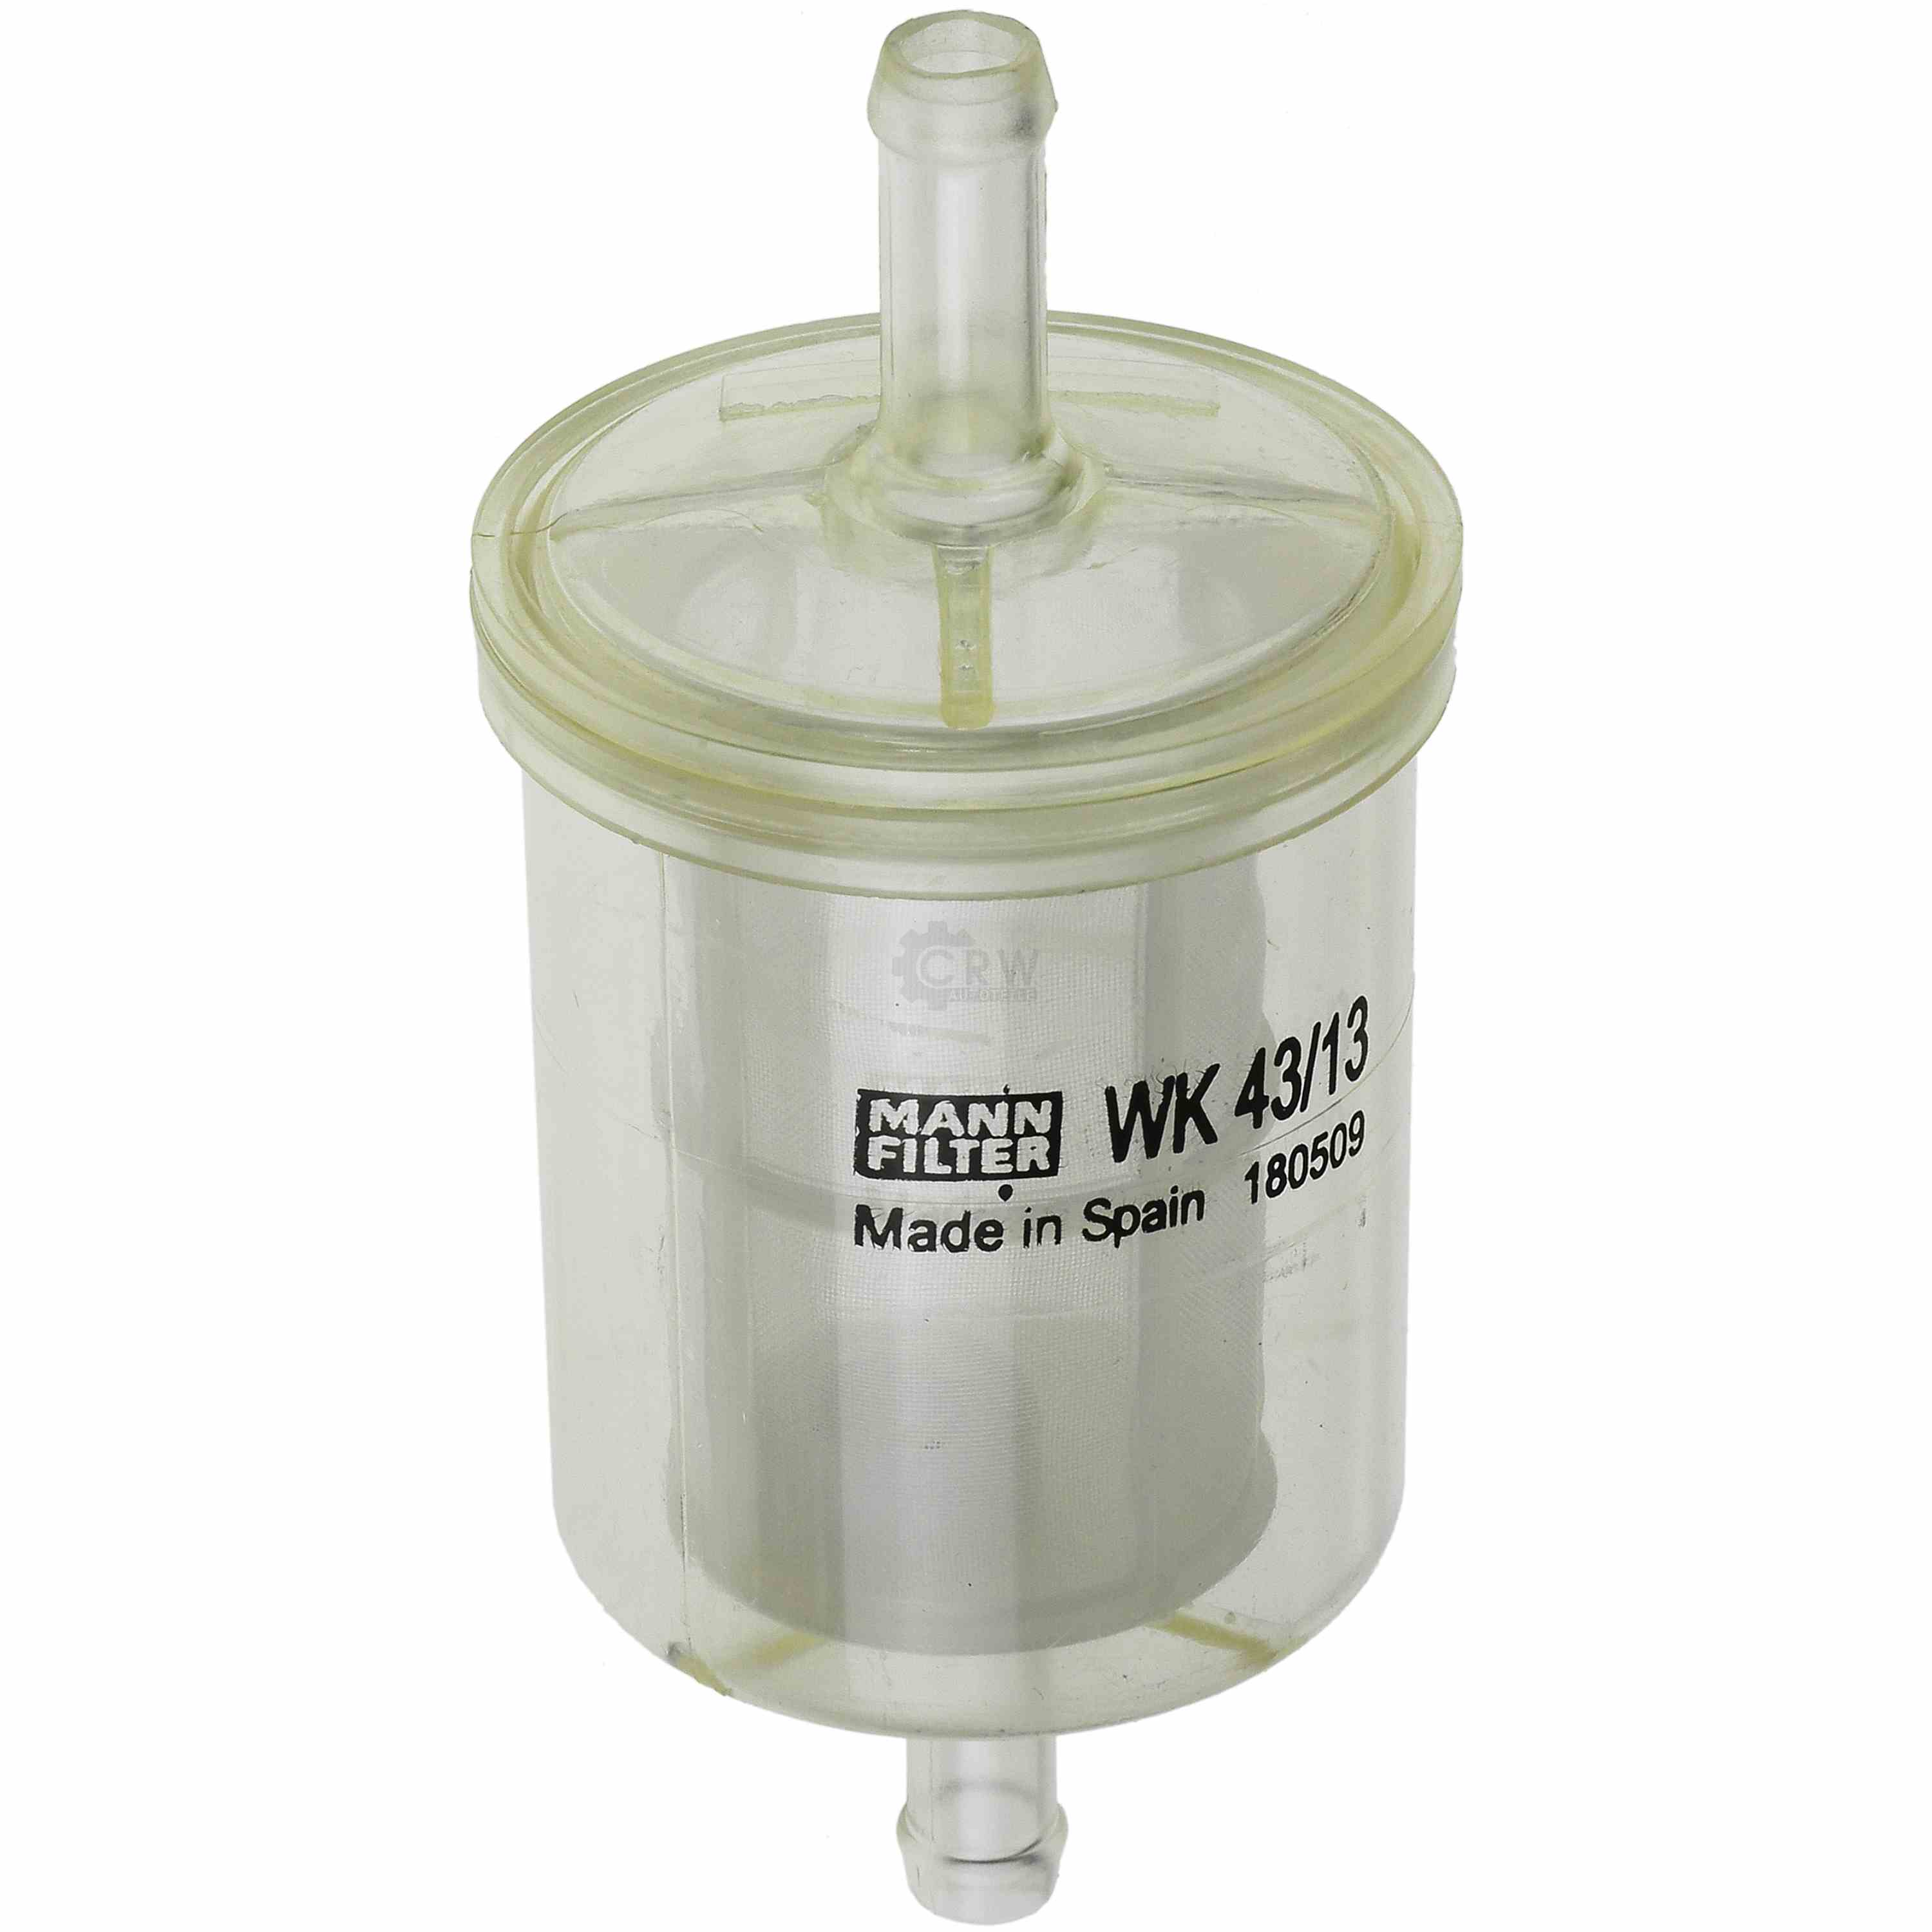 MANN FILTER Kraftstofffilter Fuel Filter WK 43/13